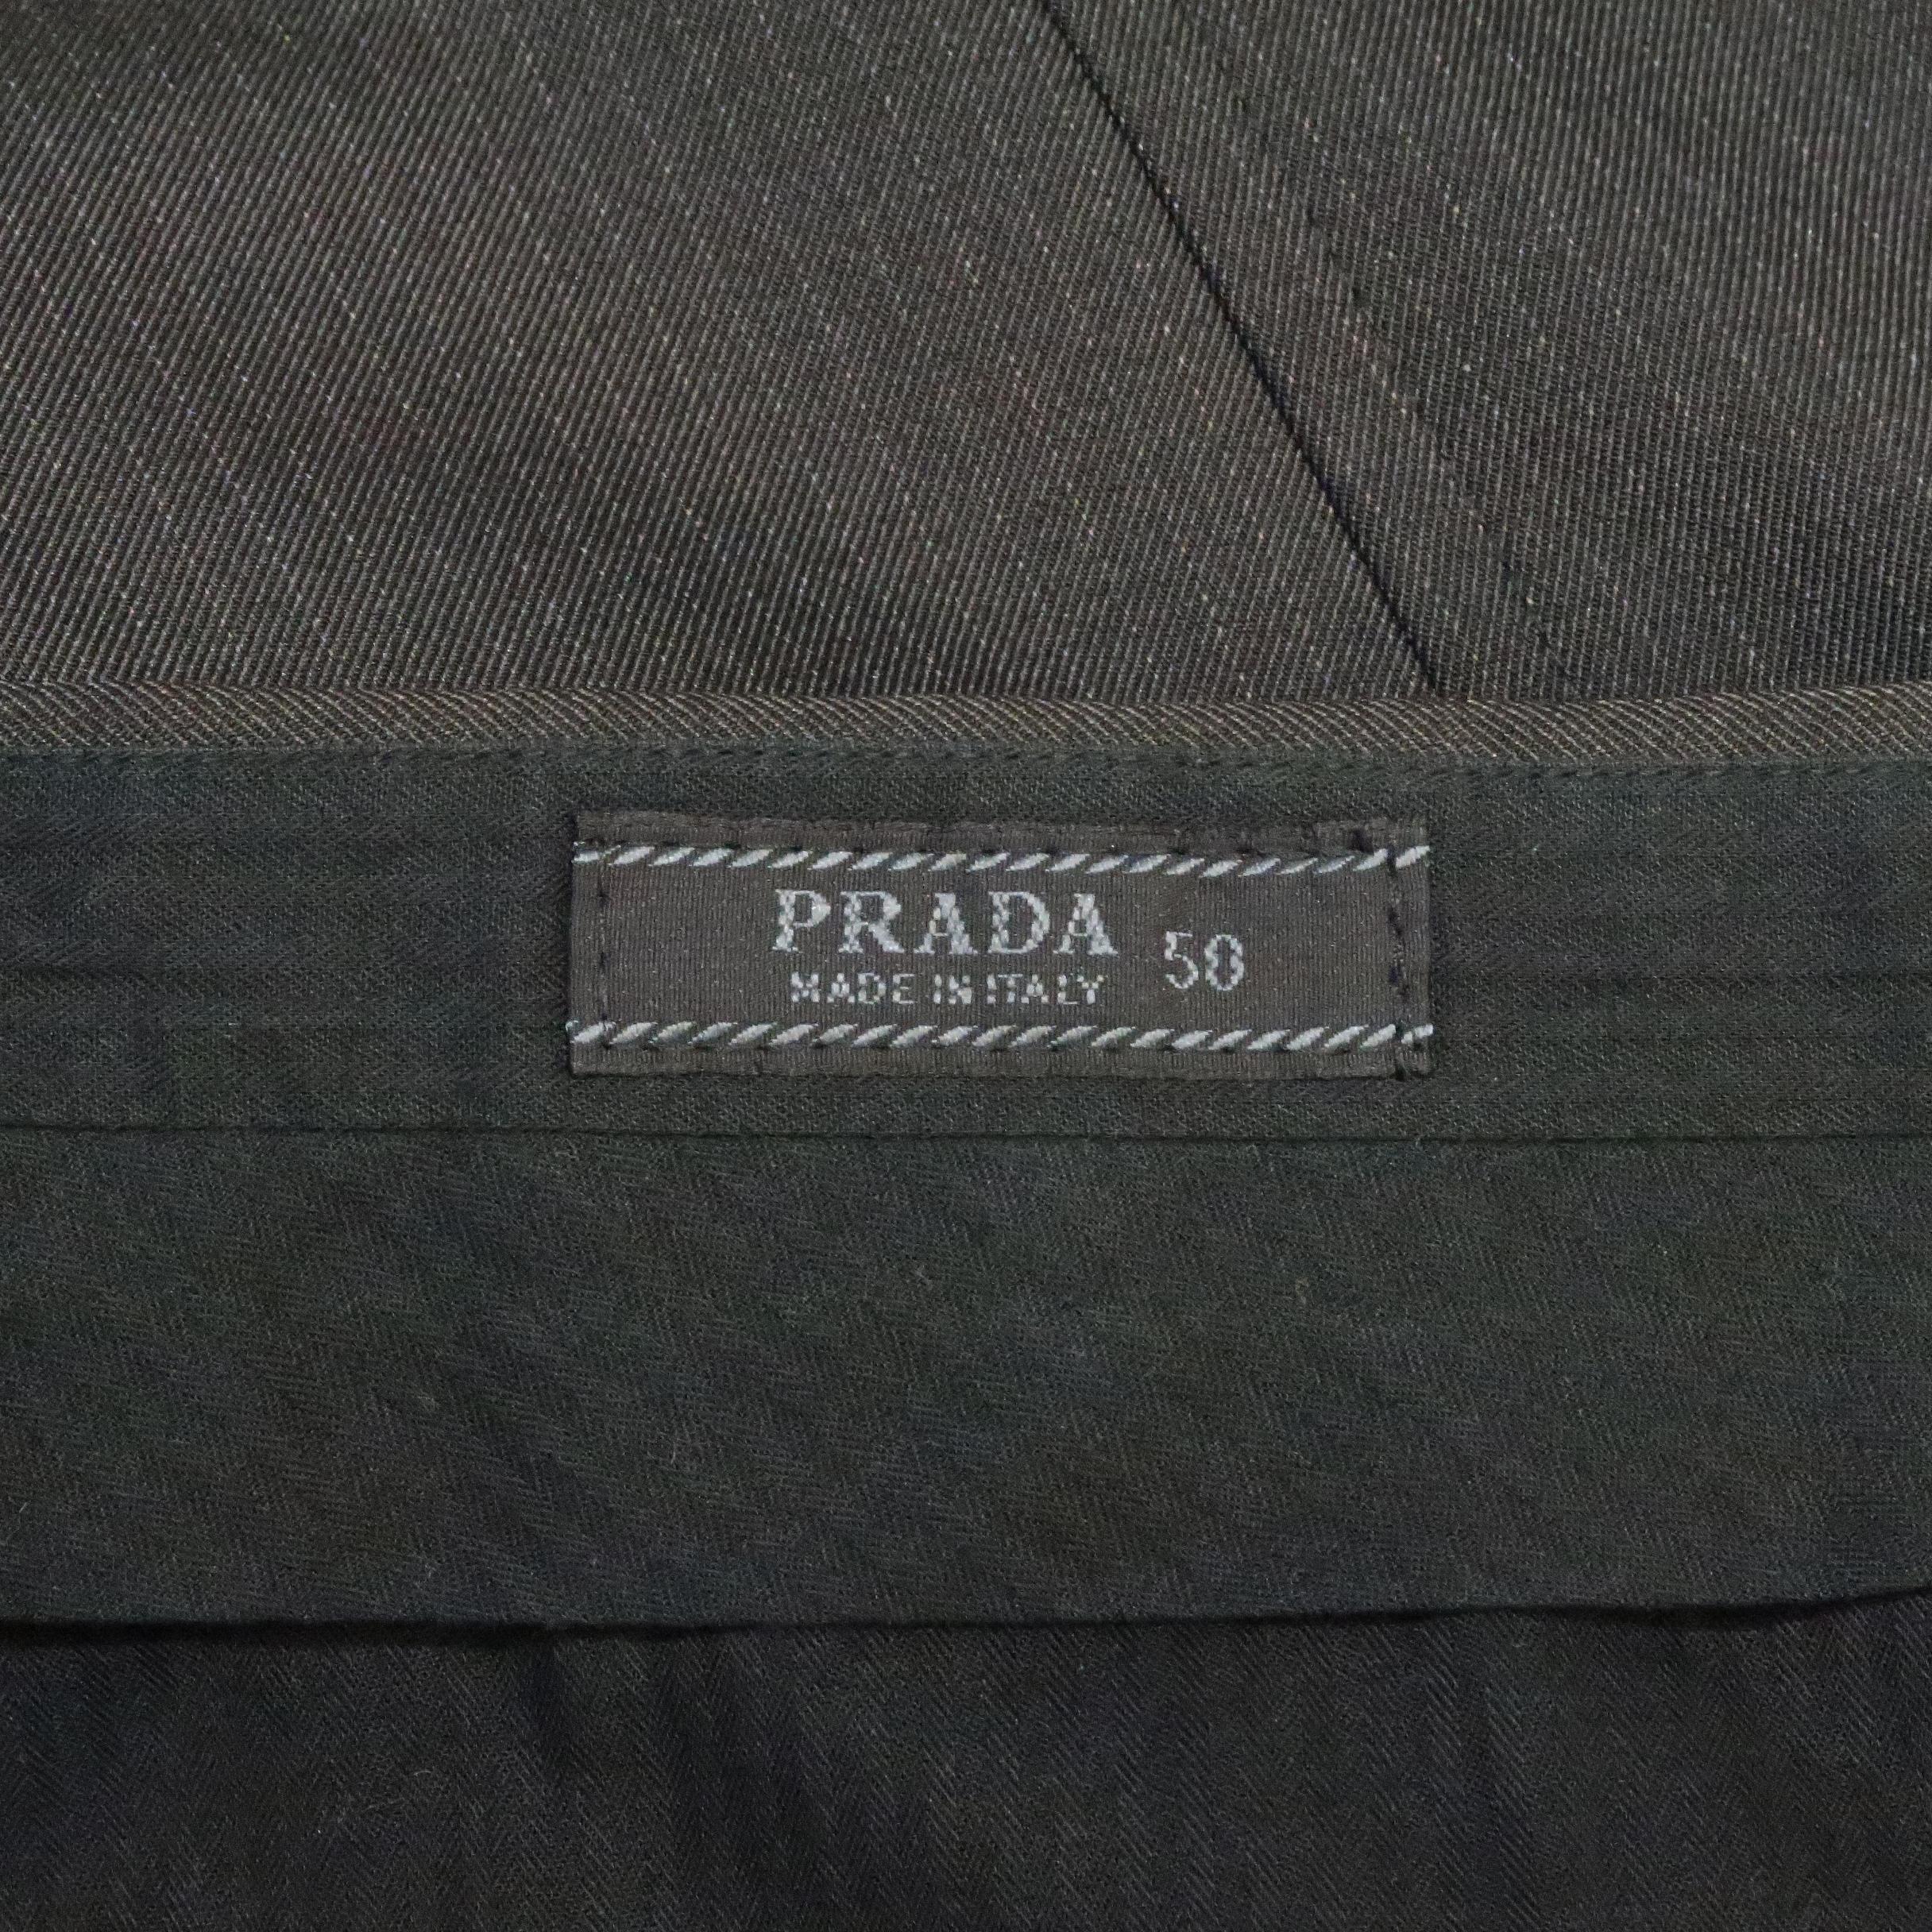 PRADA Size 34 Charcoal Stripe Nylon Blend Dress Pants 3